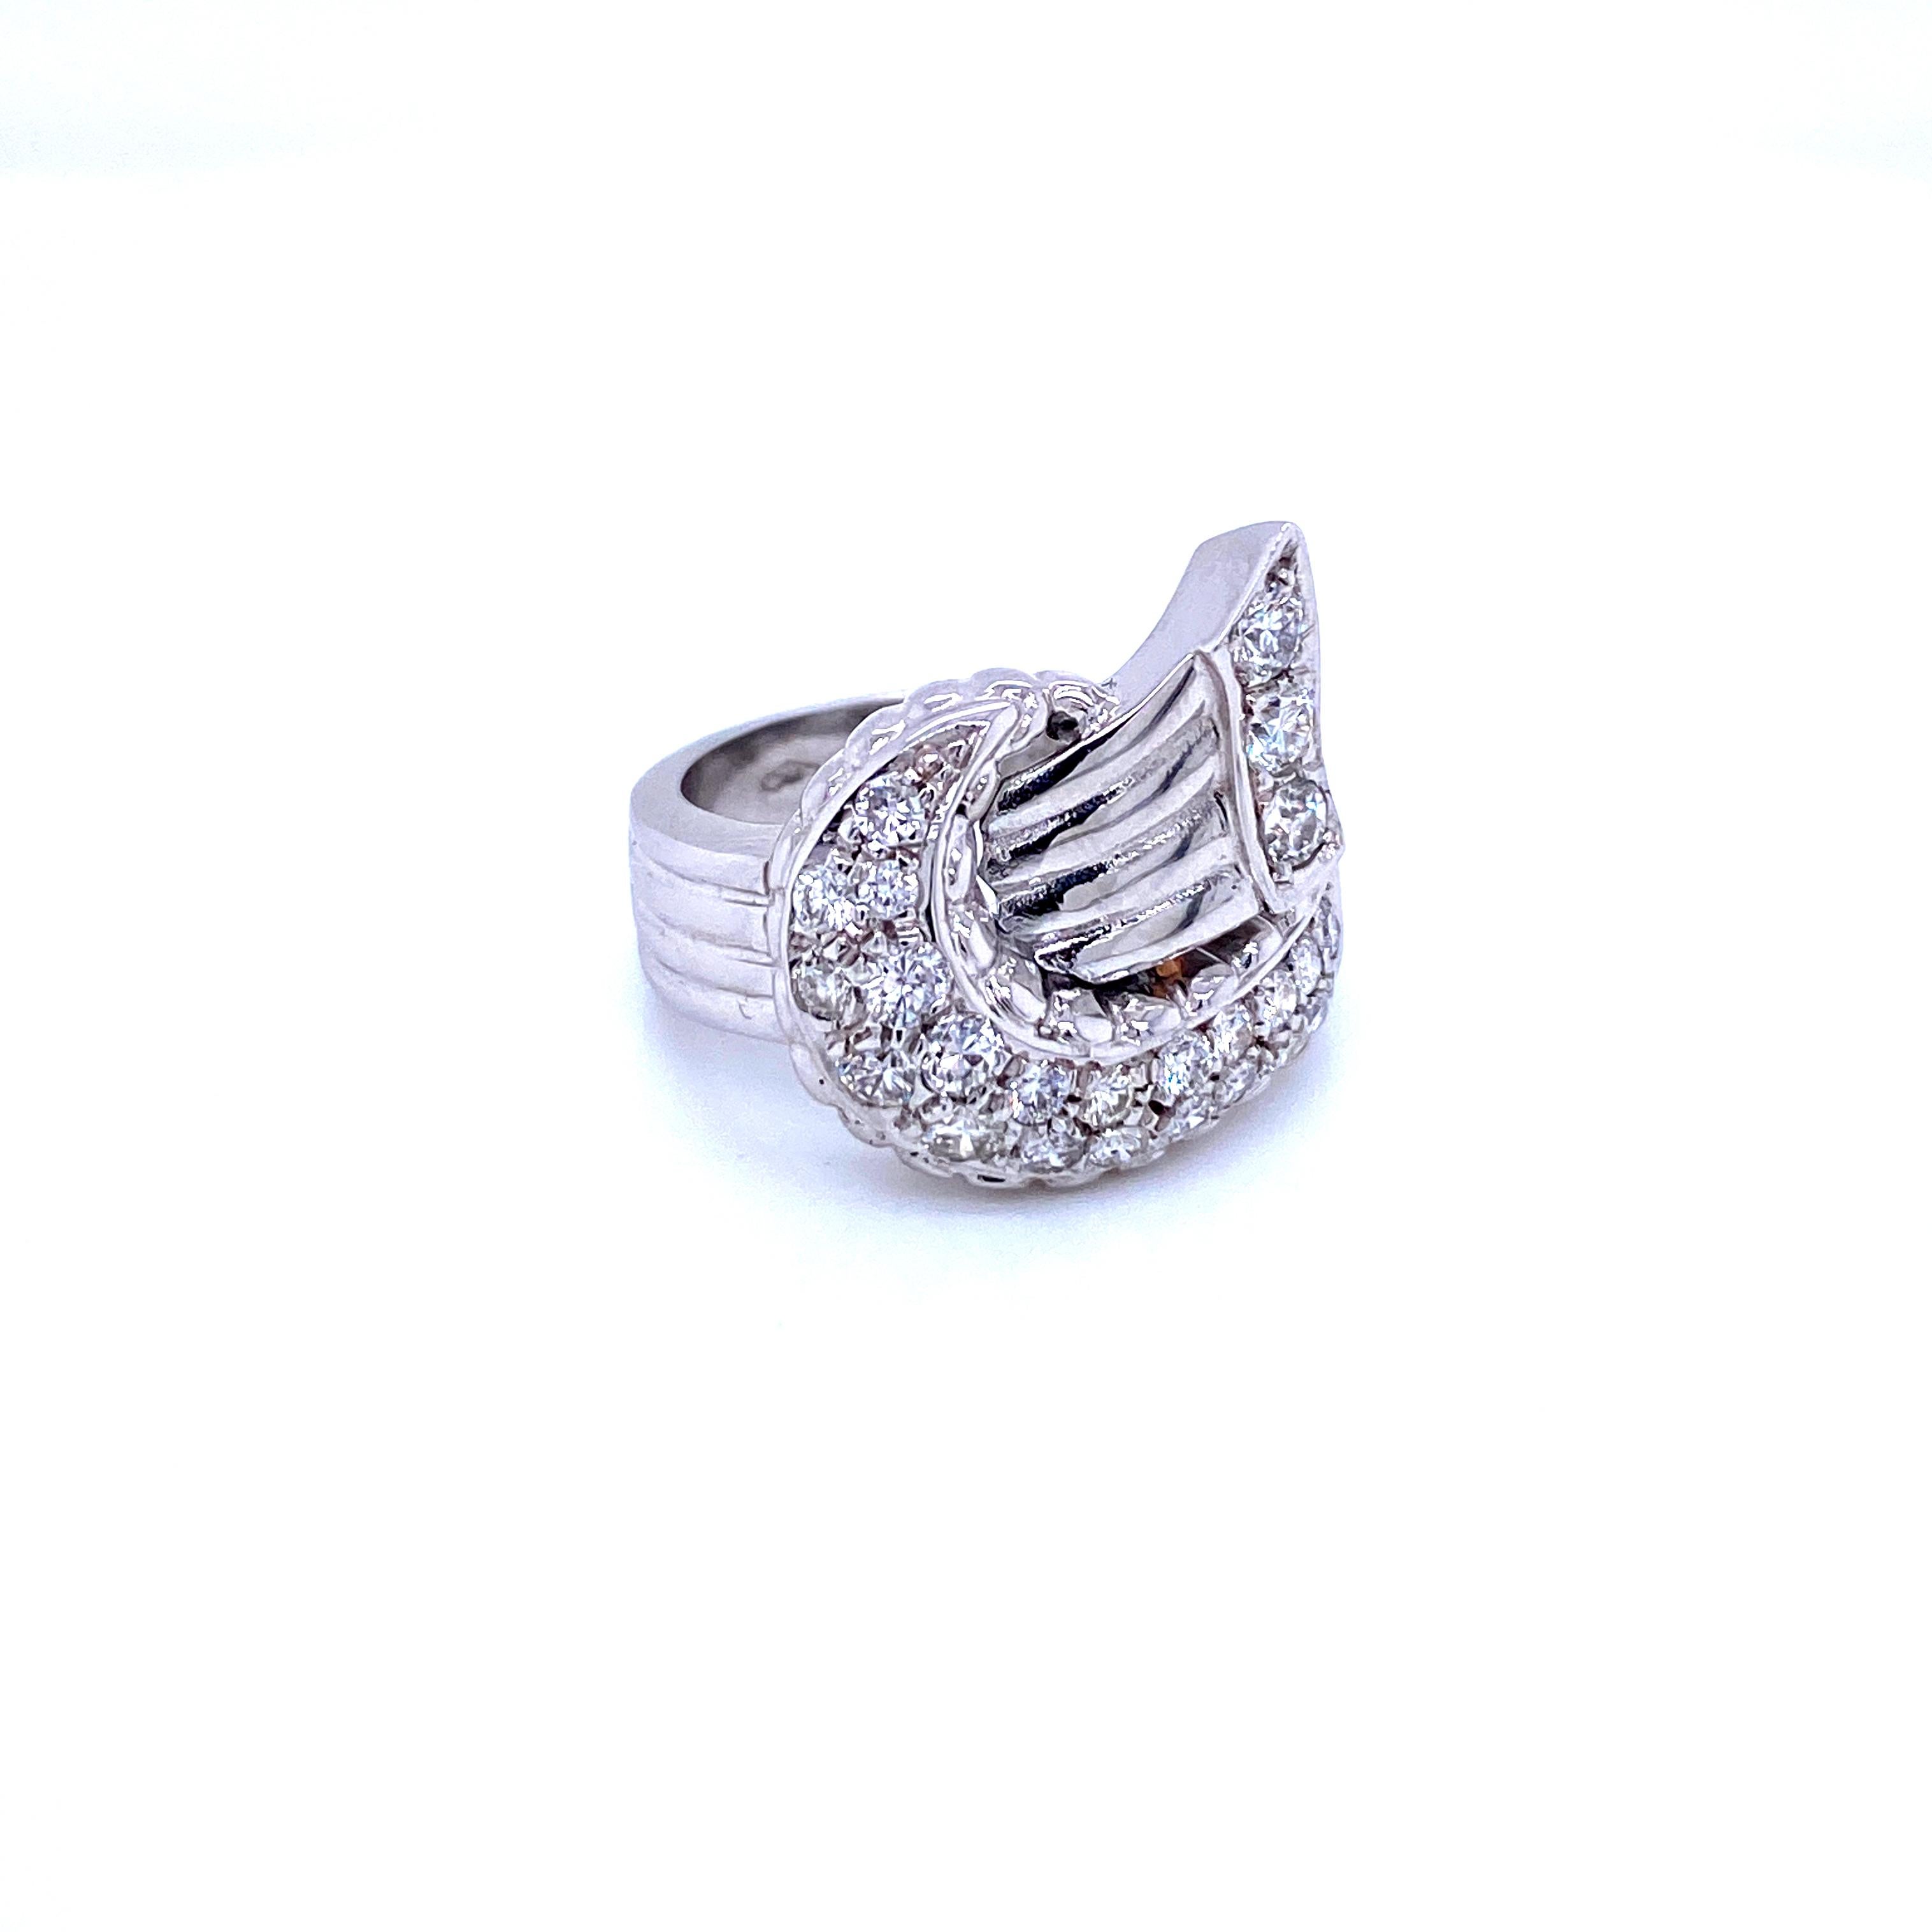 Außergewöhnlicher Ring im Art-Déco-Stil, handgefertigt in 18 Karat Weißgold.
Es ist mit funkelnden Diamanten mit rundem Brillantschliff, Pave-Fassung, Gesamtgewicht 1,05 Karat abgestuft G Farbe Vs2 Klarheit gesetzt. 


Ring Größe: US 8,5 - IT 18 -